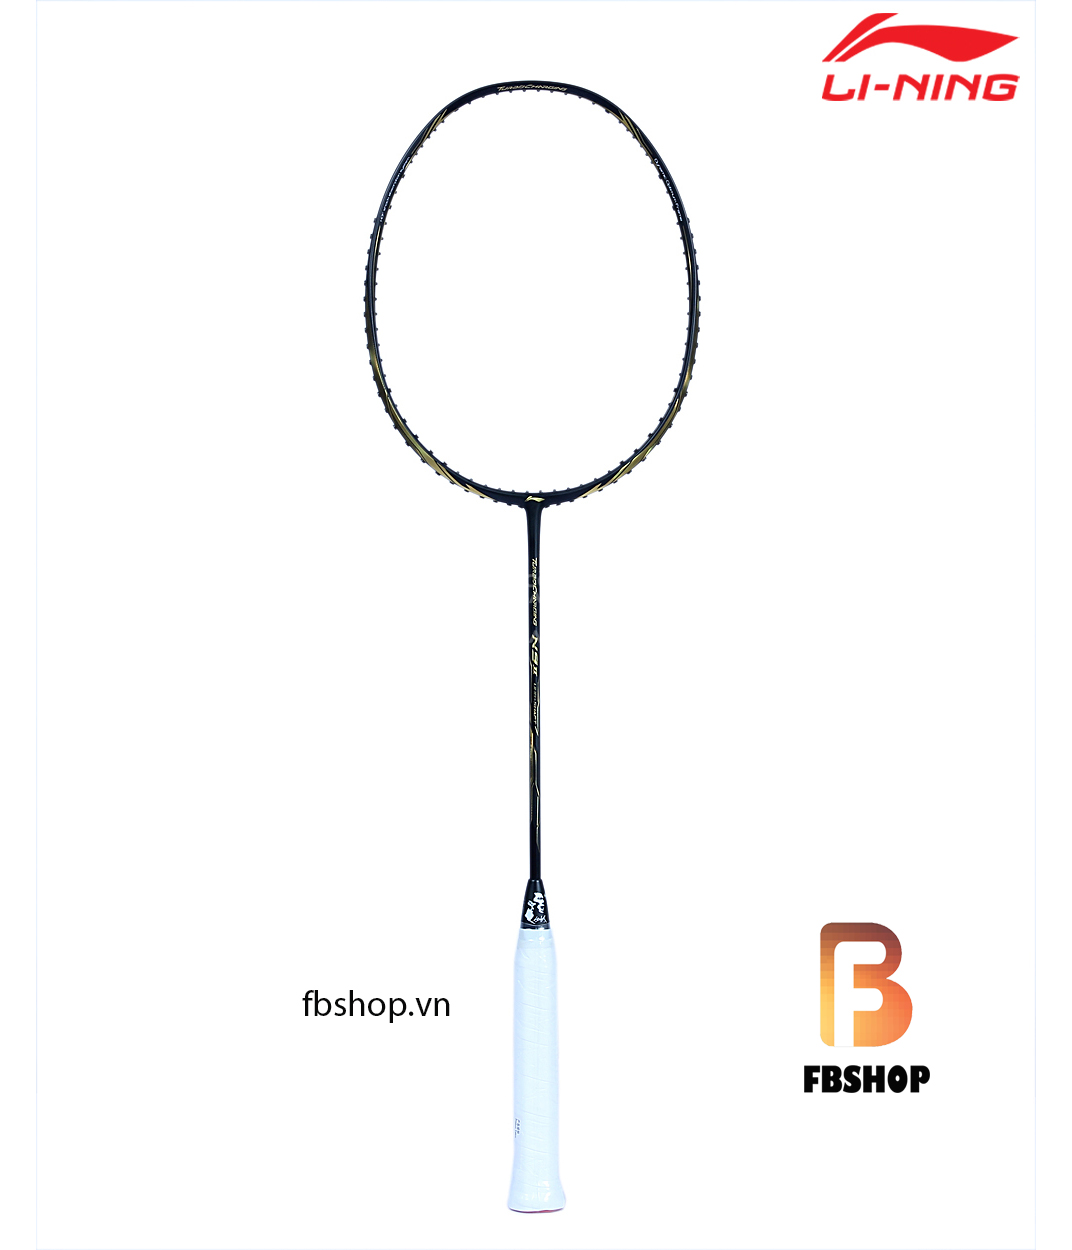 vợt cầu lông lining N9II FU HAIFENG - tổng thể 